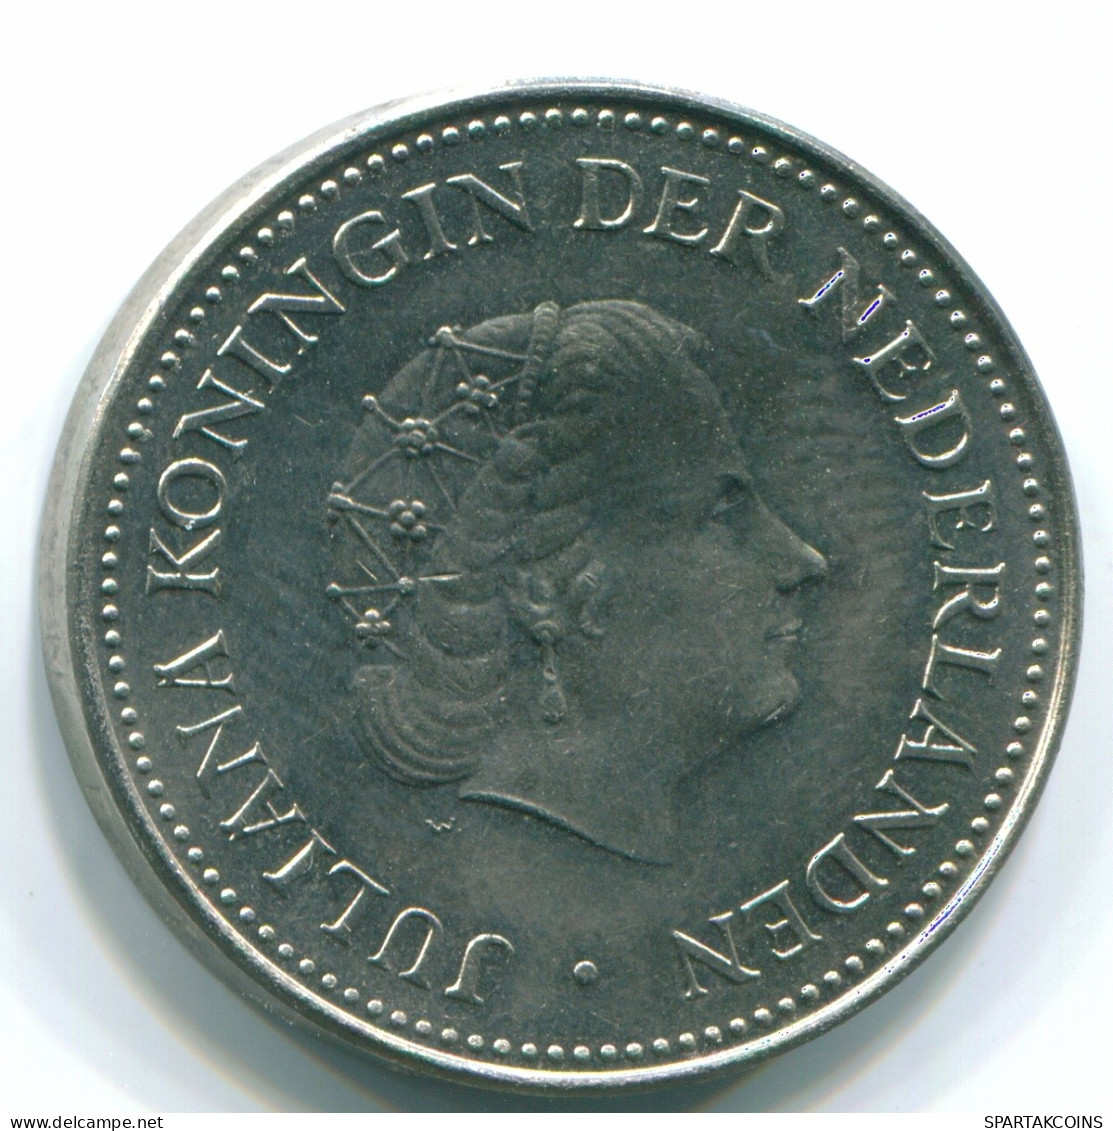 1 GULDEN 1971 ANTILLAS NEERLANDESAS Nickel Colonial Moneda #S11966.E.A - Antillas Neerlandesas